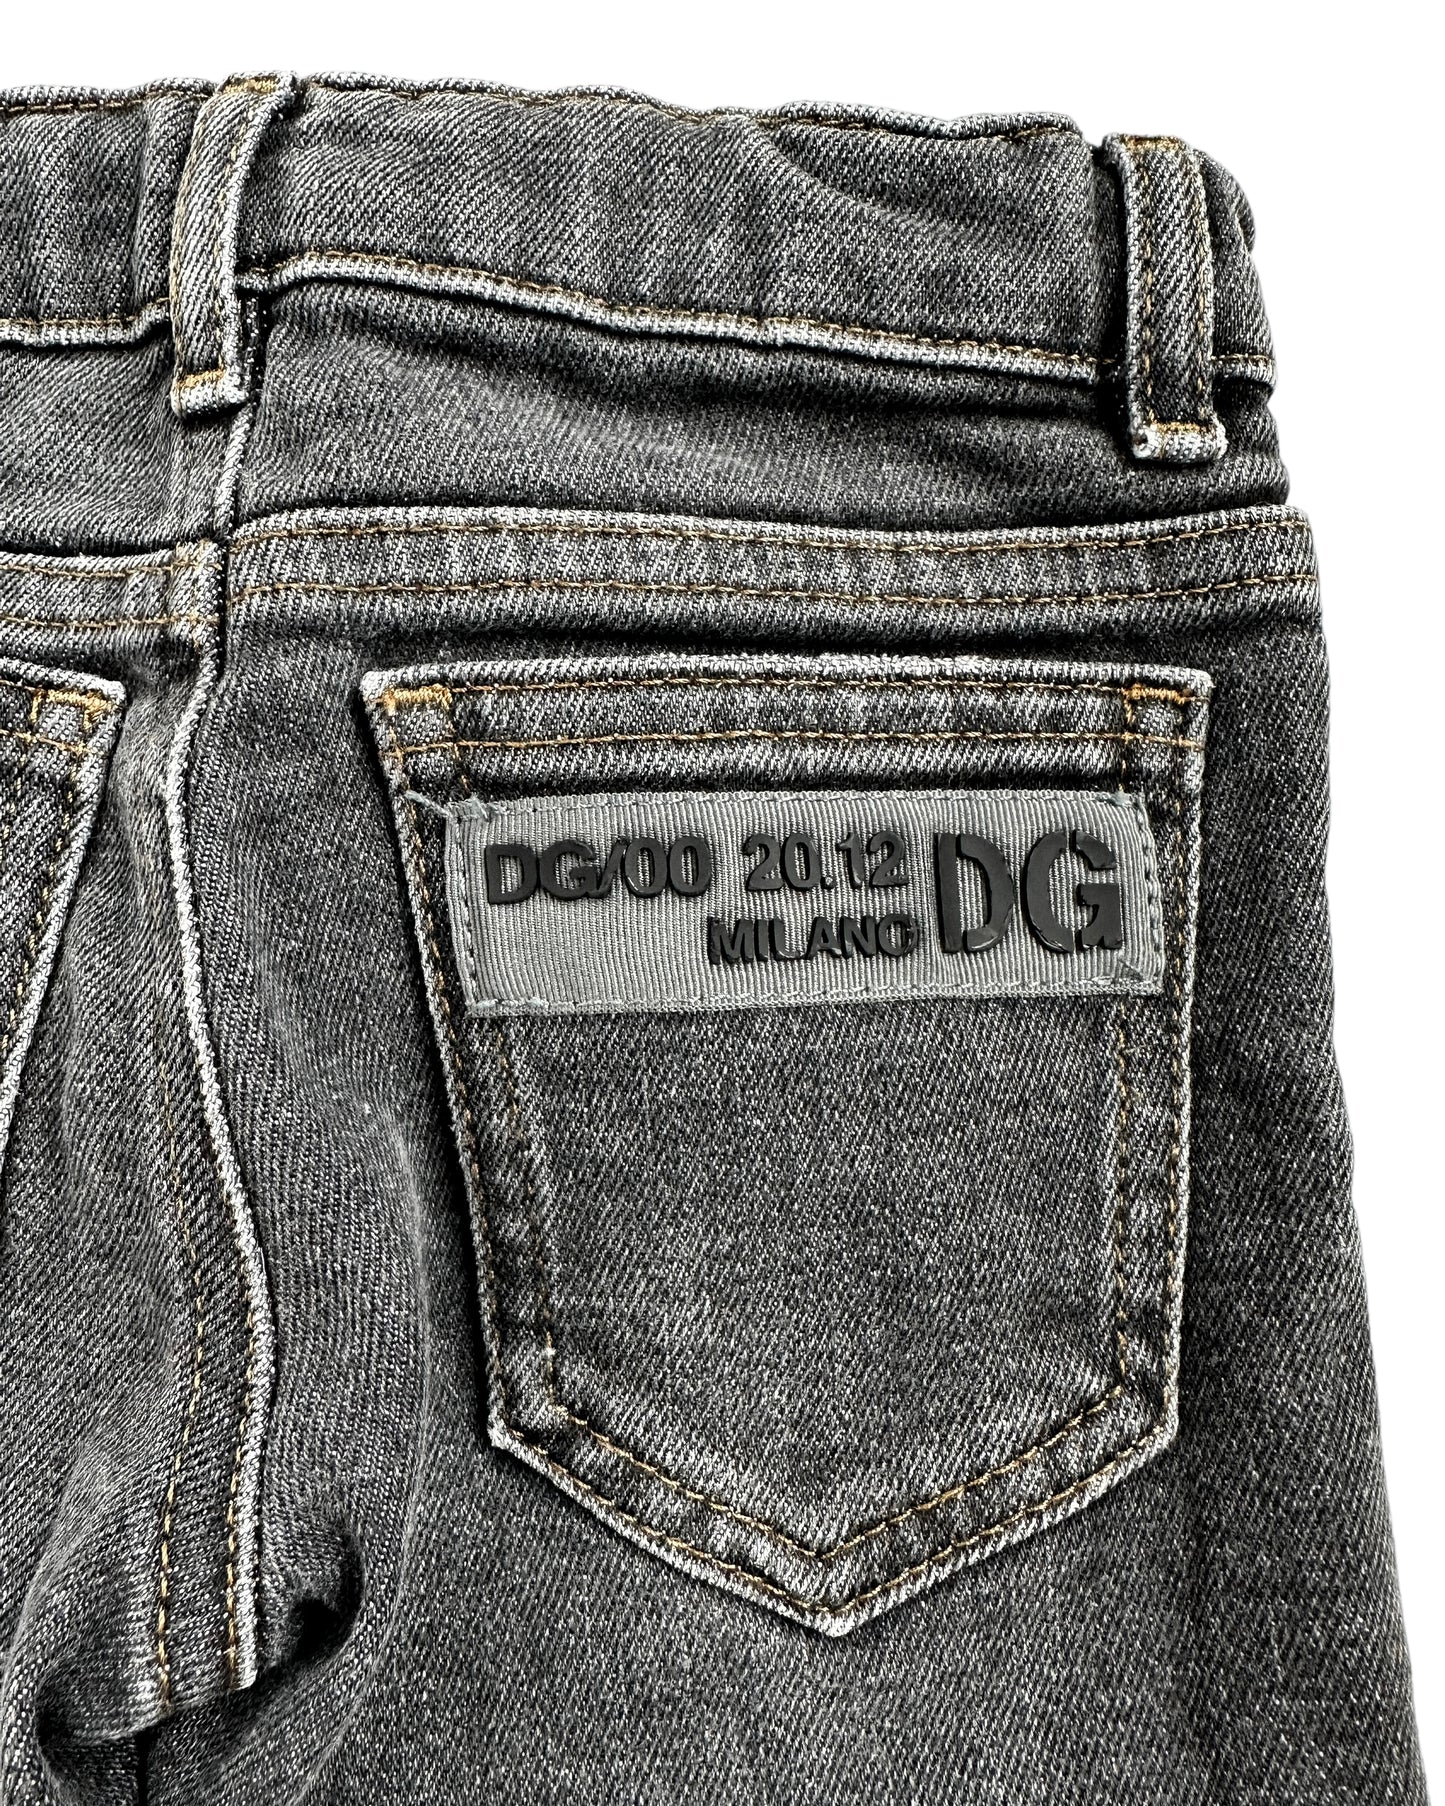 Dolce&Gabbana Kids Jeans